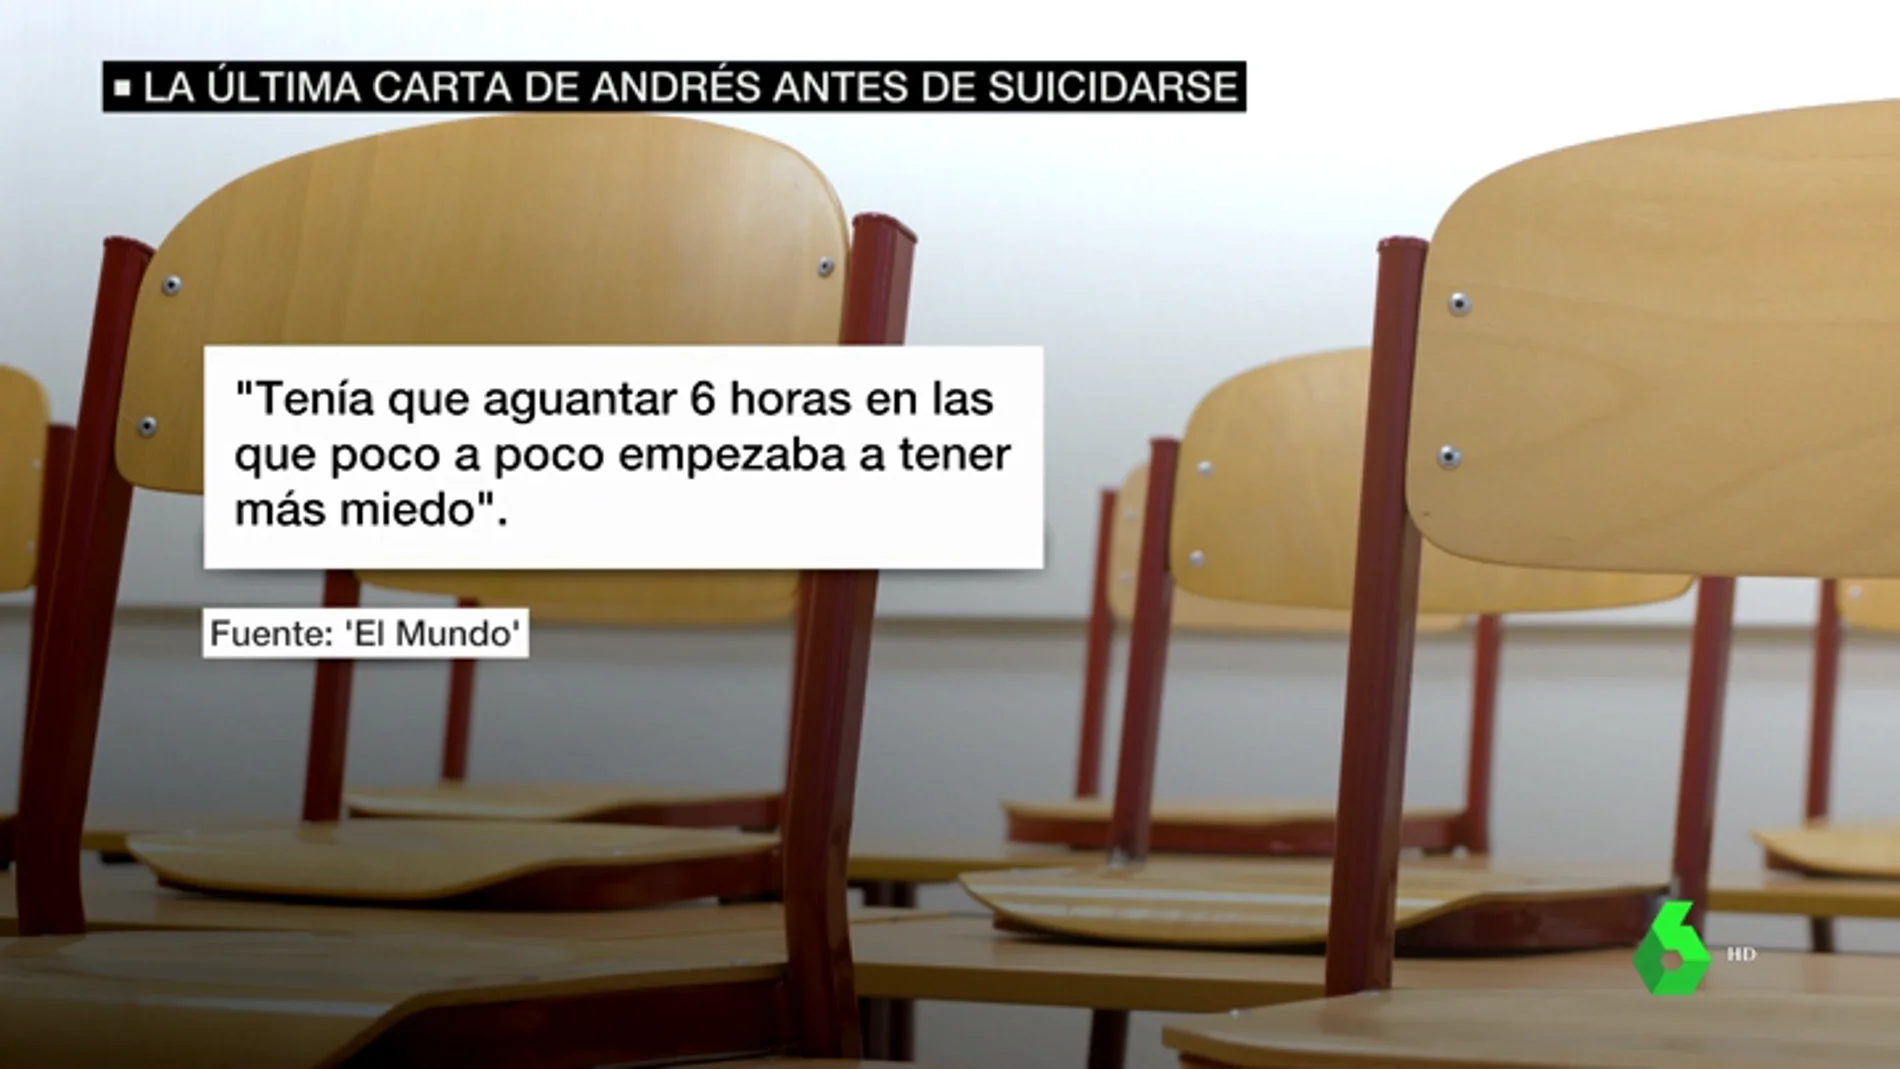 El "infierno diario" en clase que relató Andrés en su carta de suicidio: "Estaba harto de tragar. Ya no quiero vivir más"